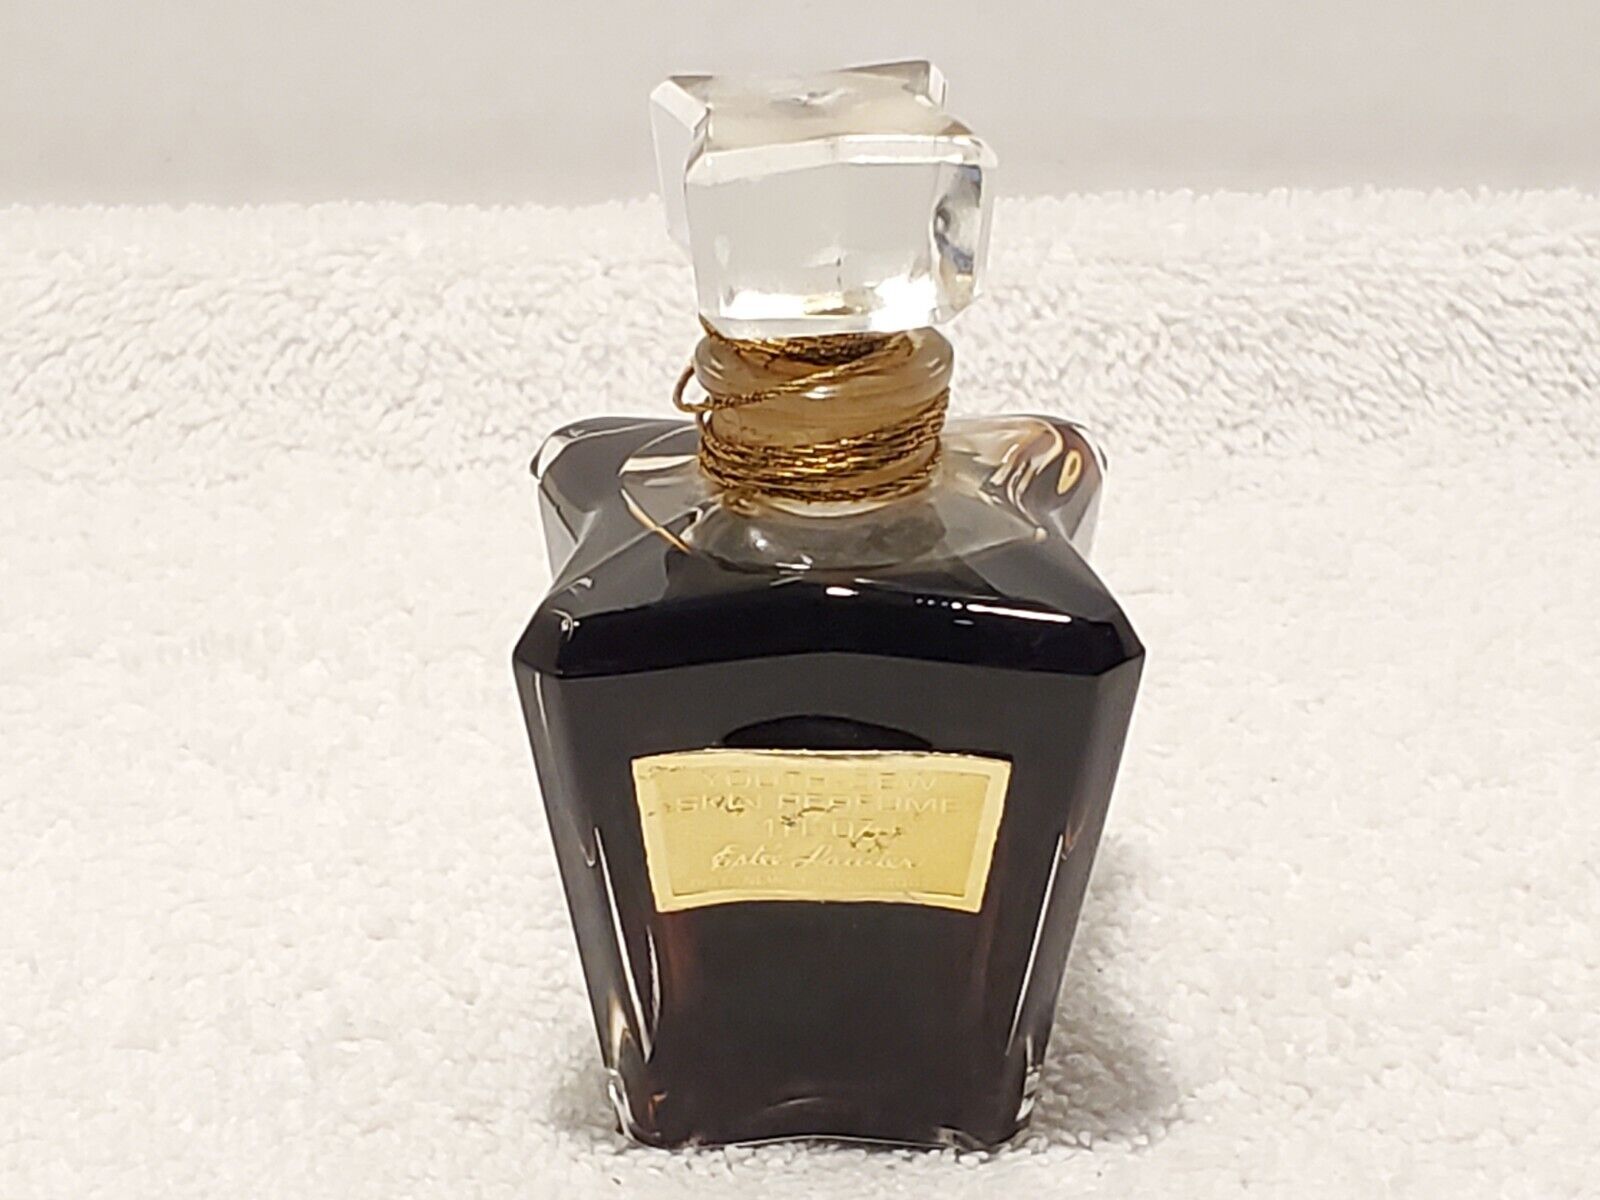 Vintage Estee Lauder France Youth Dew Pure Skin Perfume 1.0 oz Bottle Splash